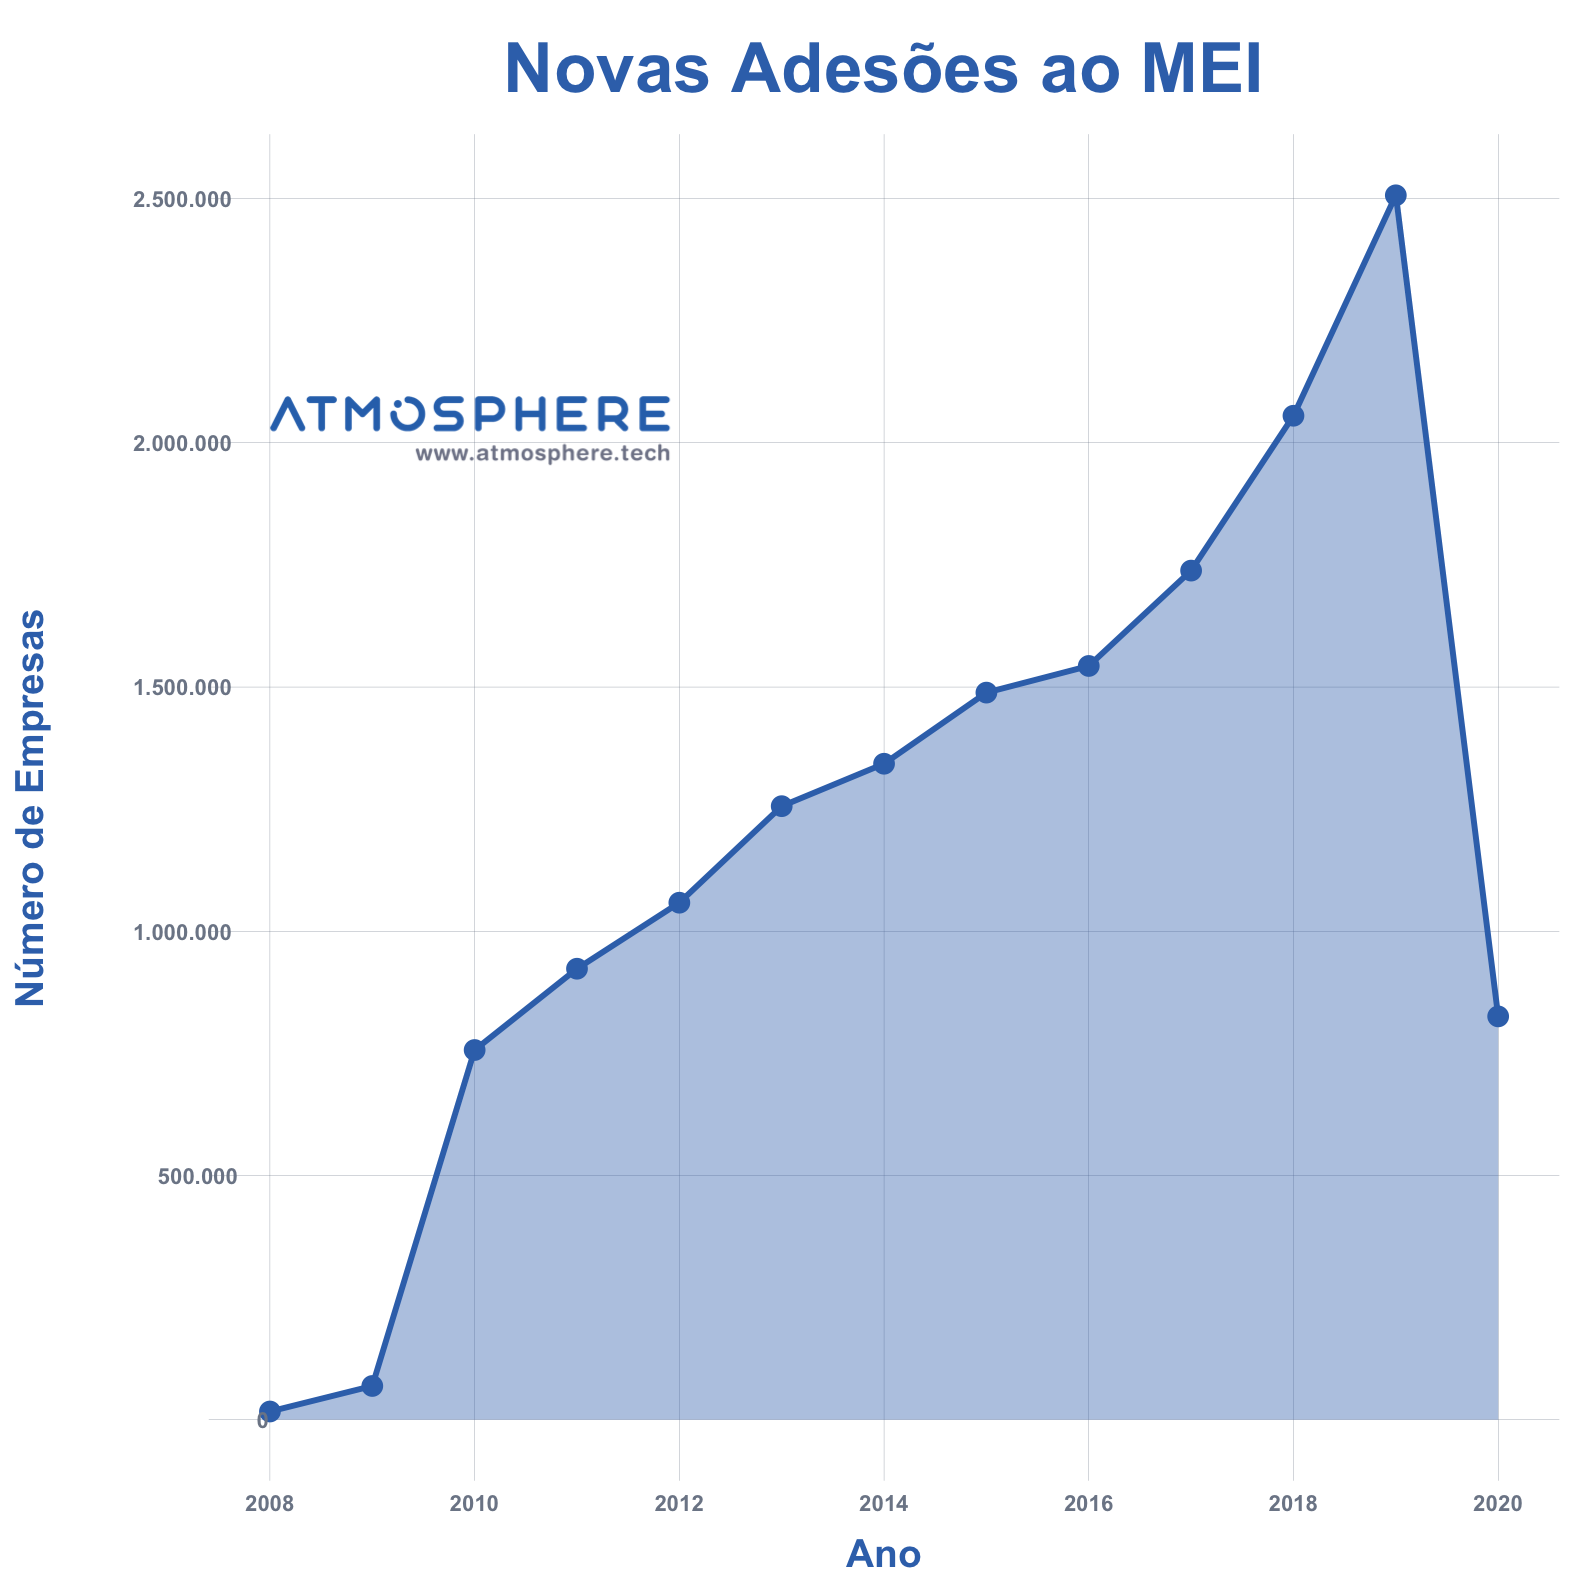 Atmosphere MEI Microempreendedor Individual Novas Adesões no Brasil